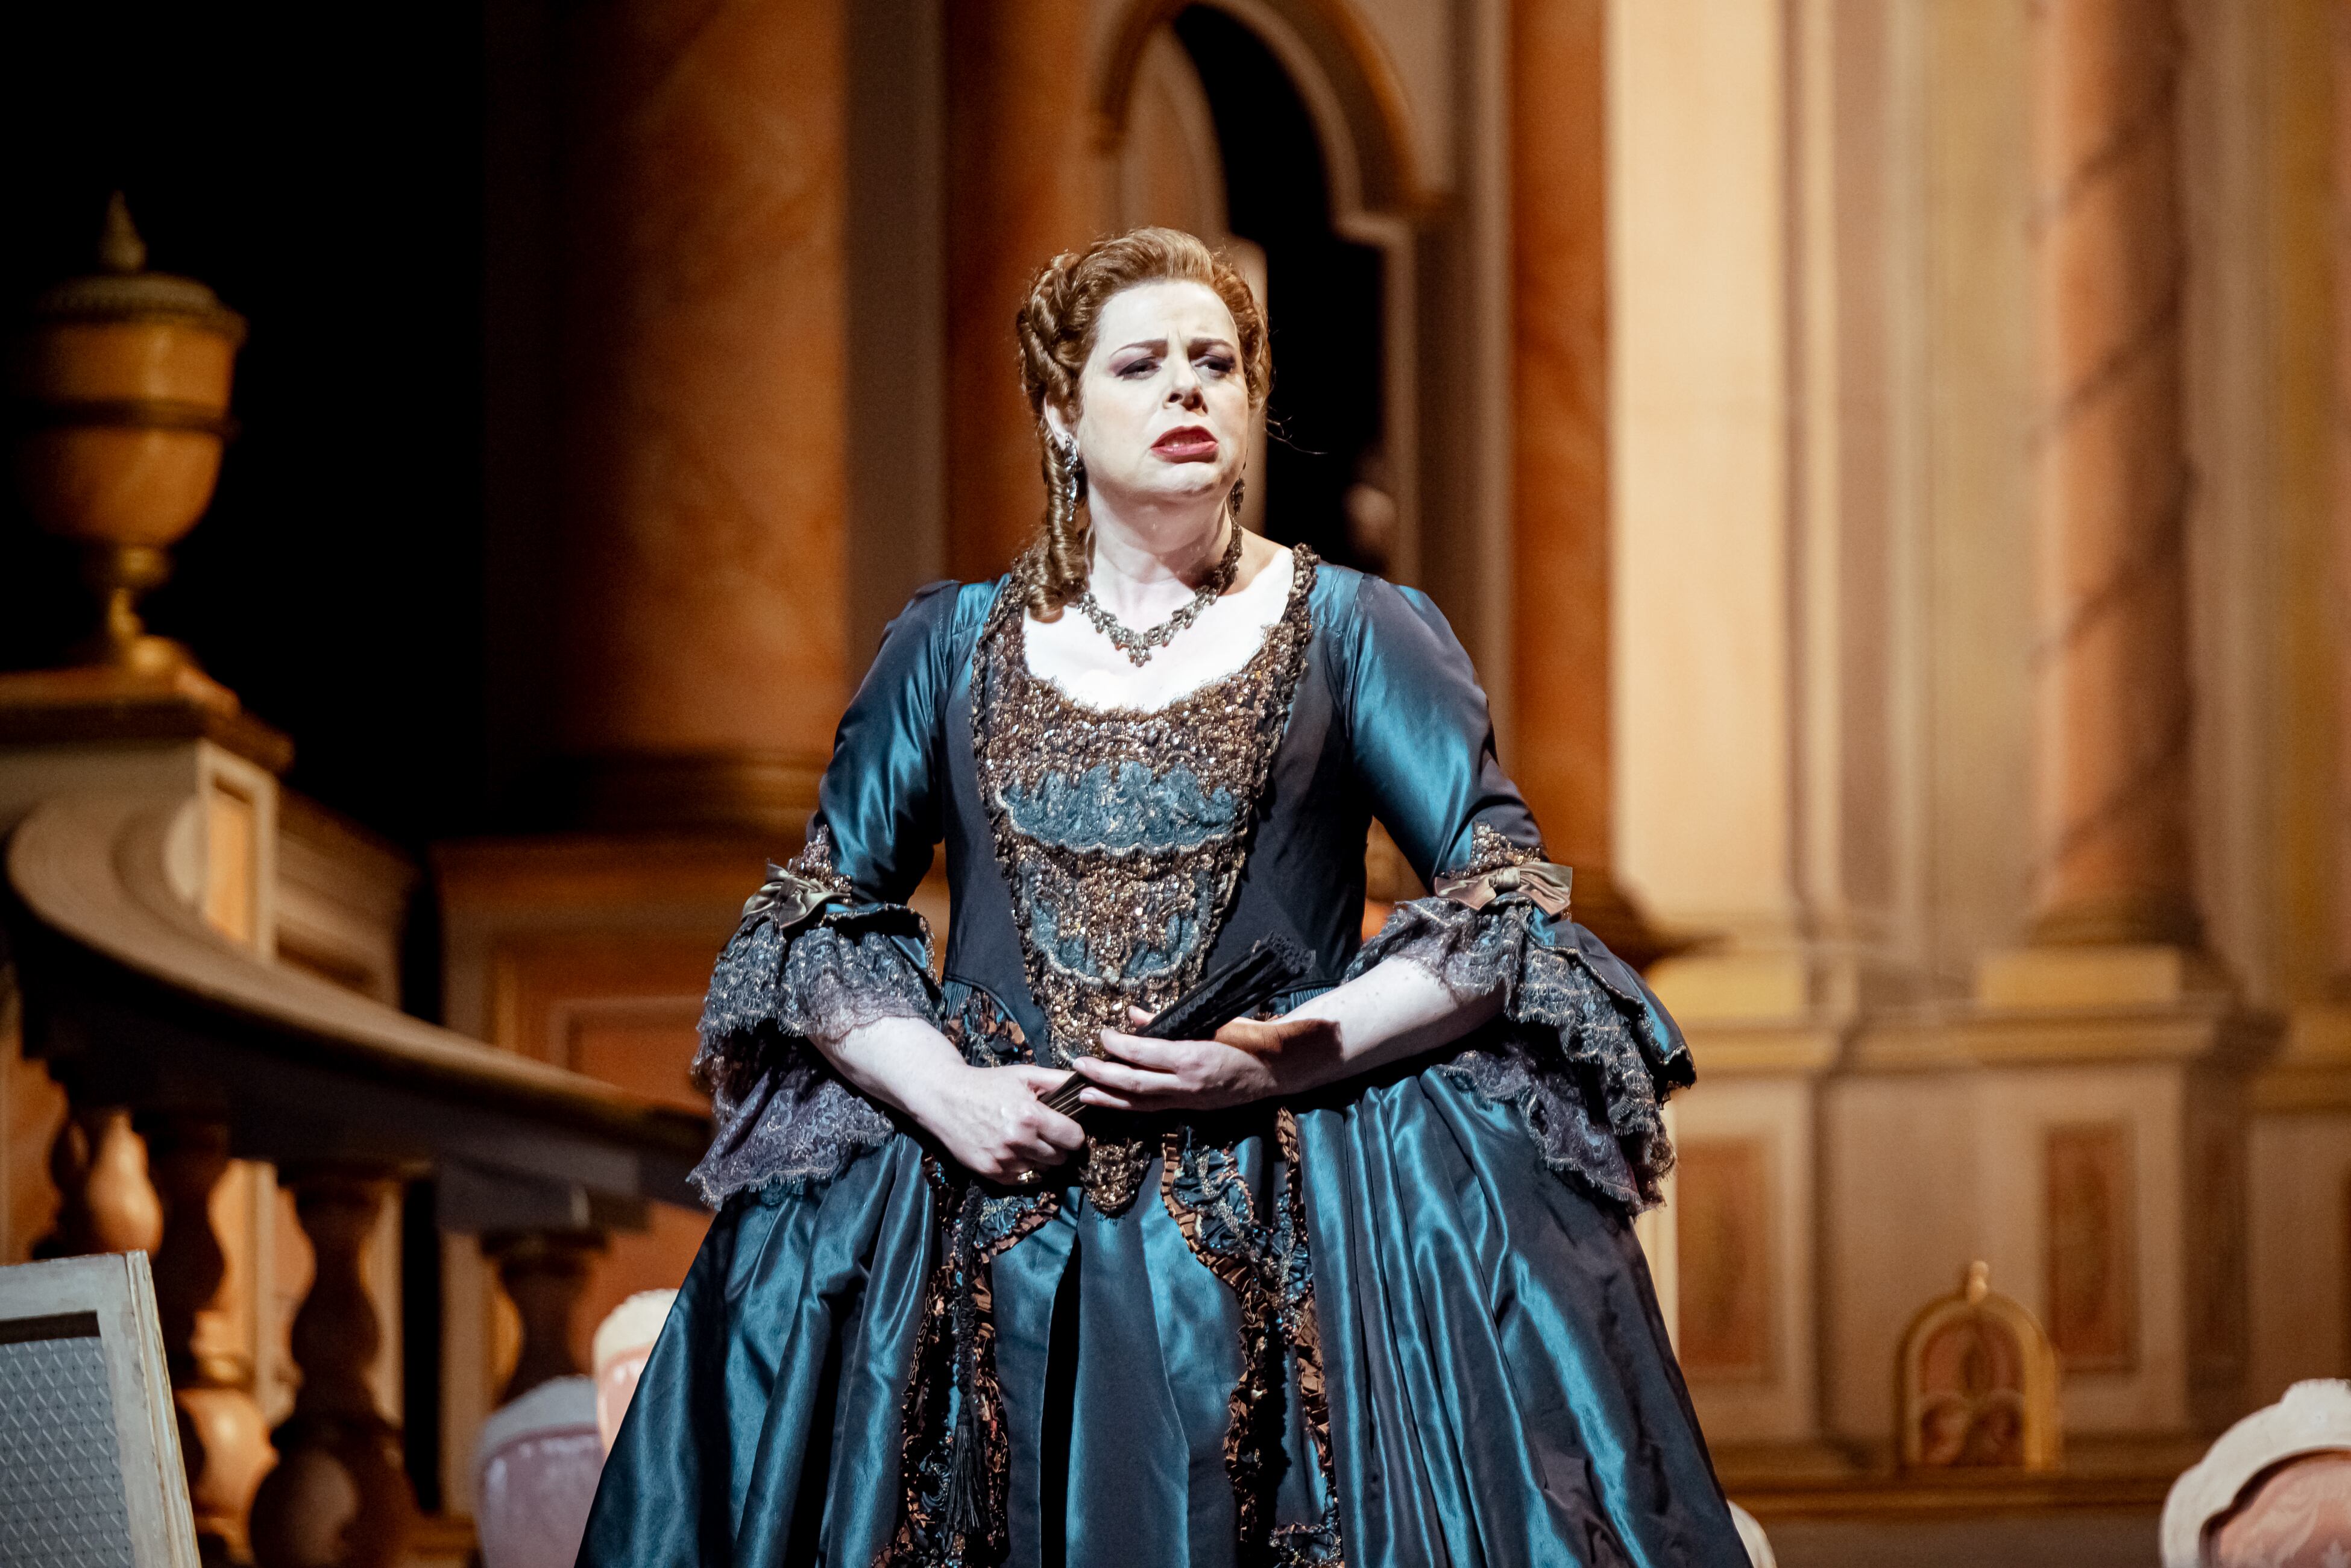 La ‘mezzosoprano’ Daniela Barcellona en el tercer acto de ‘Adriana Lecouvreur’, el pasado 16 de junio en el Liceu de Barcelona.